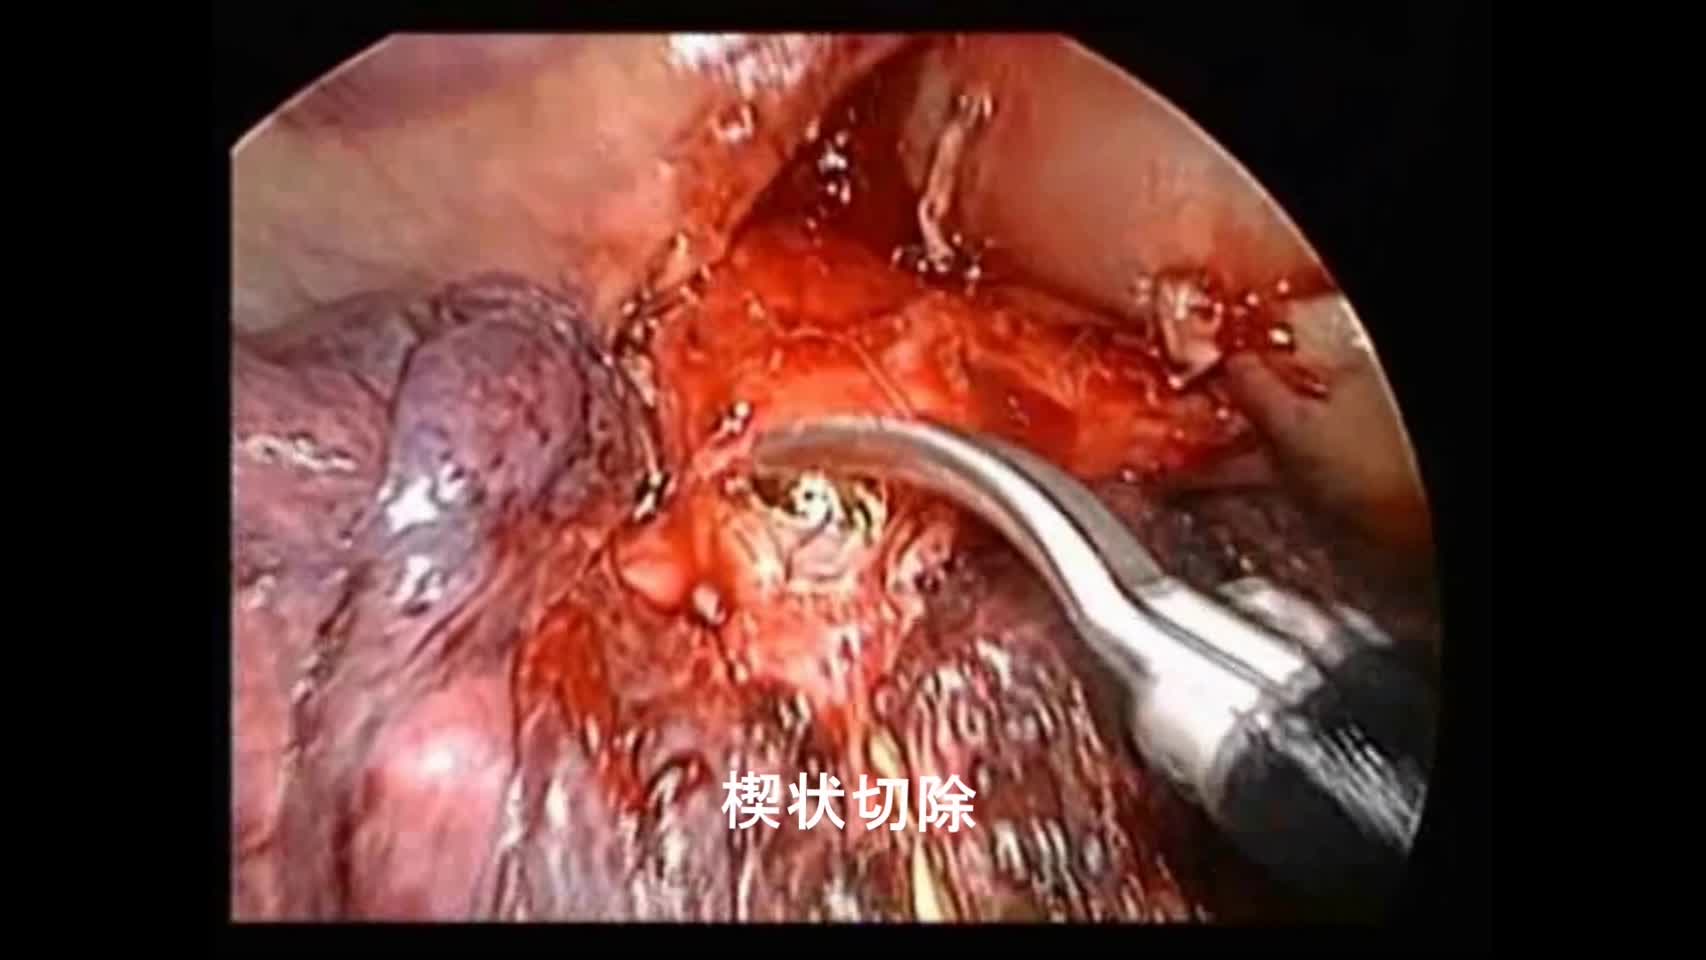 動画1 3ポート胸腔鏡下気管支形成術の手技...